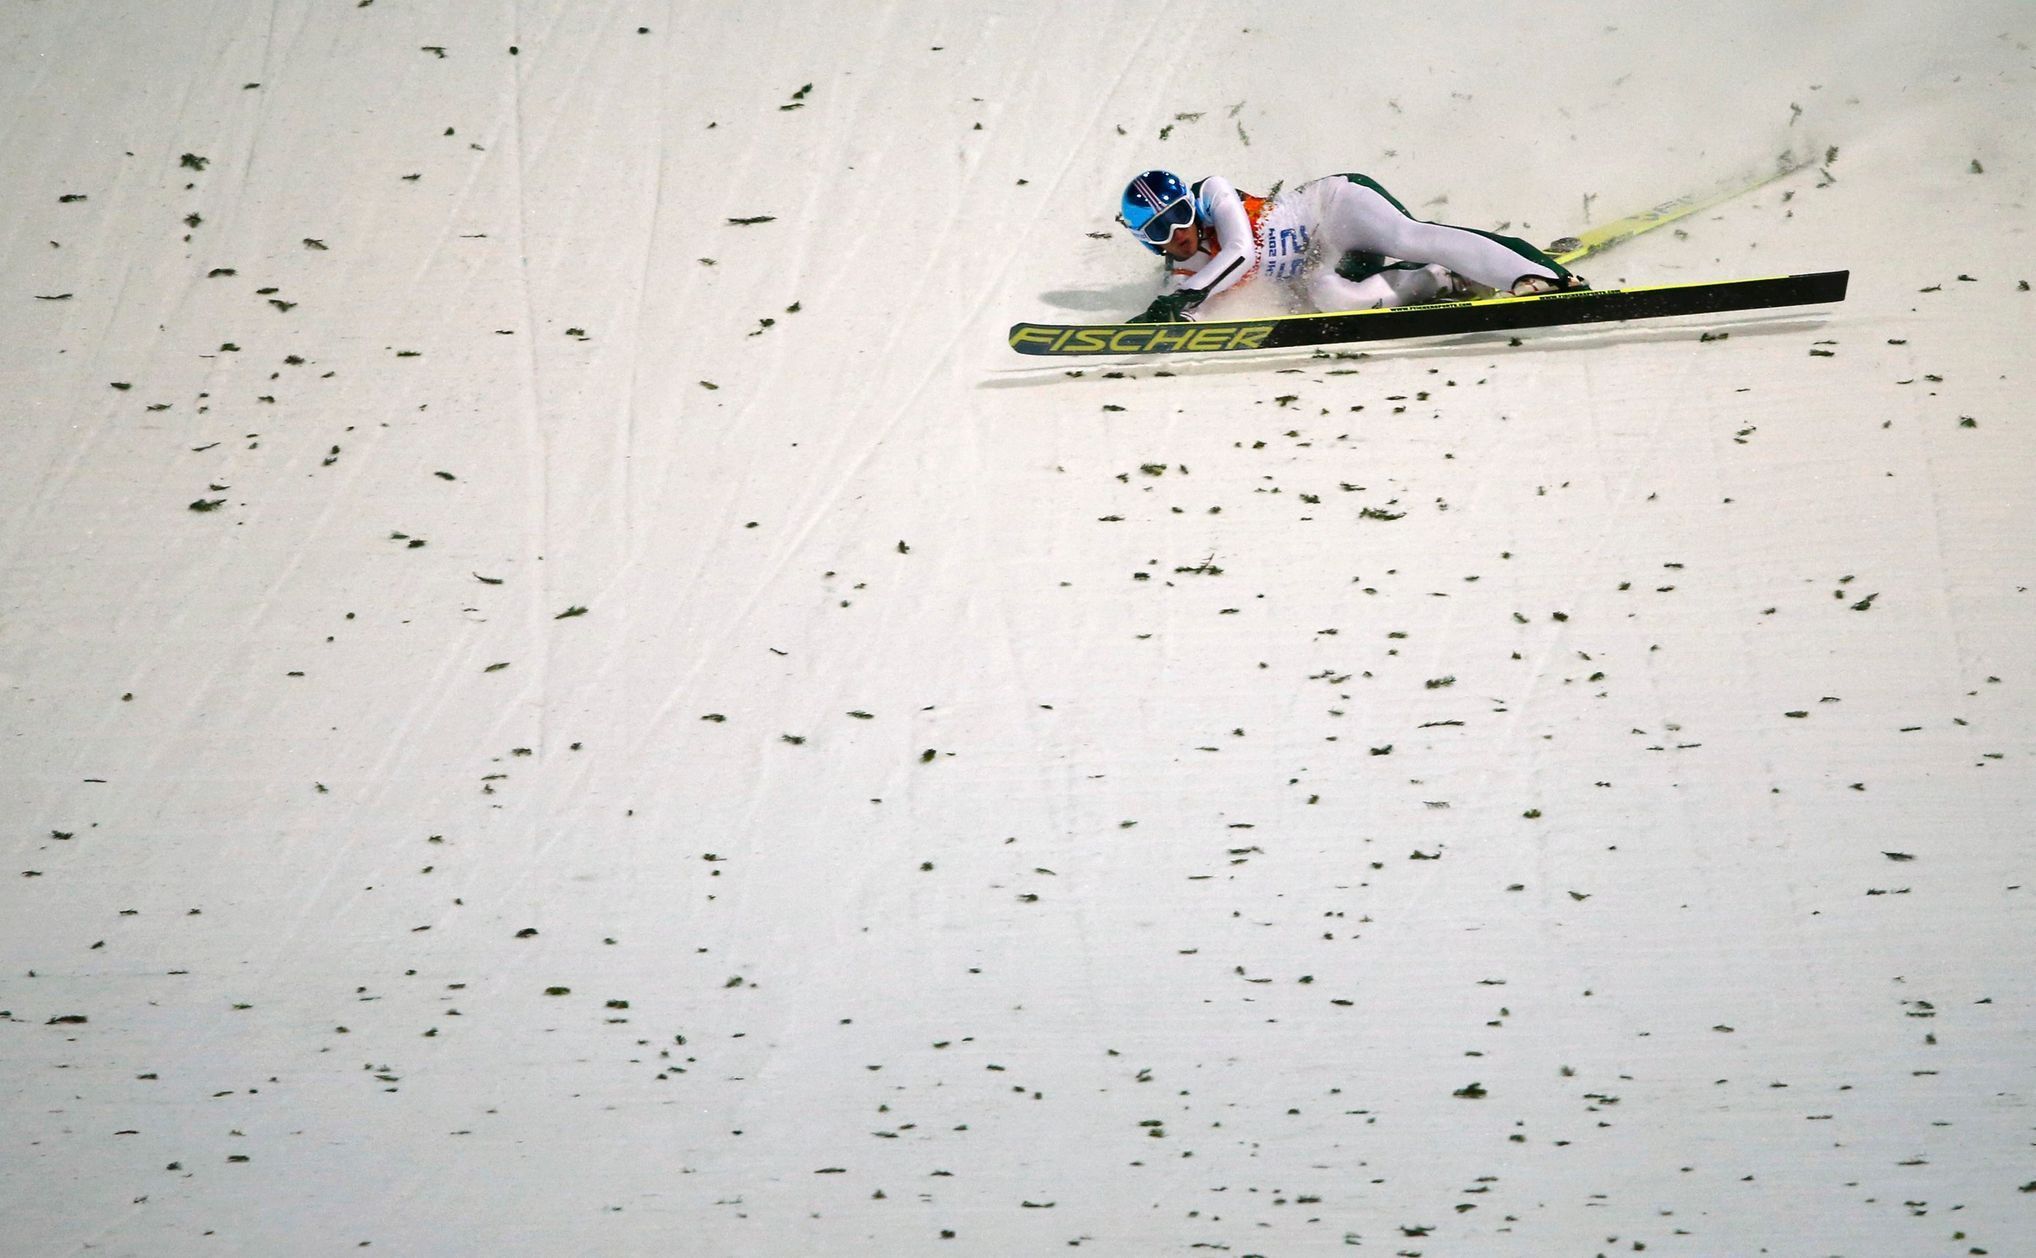 Soči 2014, skoky na lyžích: pád Roberta Kranjece ze Slovinska